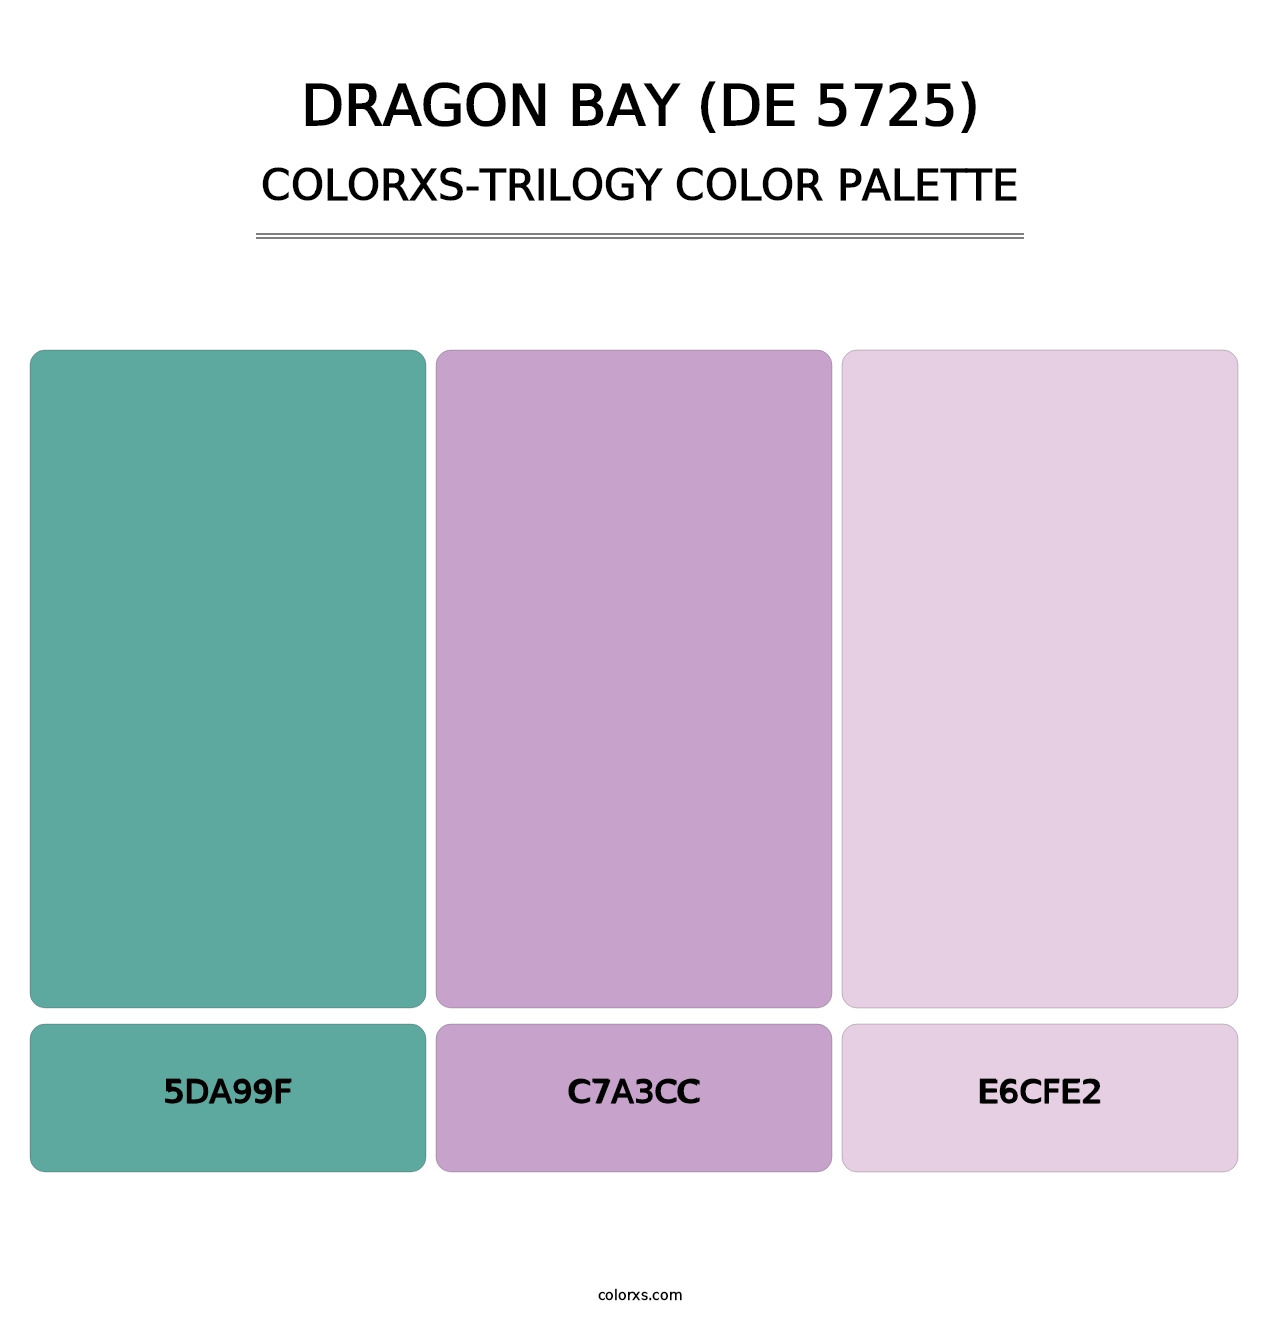 Dragon Bay (DE 5725) - Colorxs Trilogy Palette